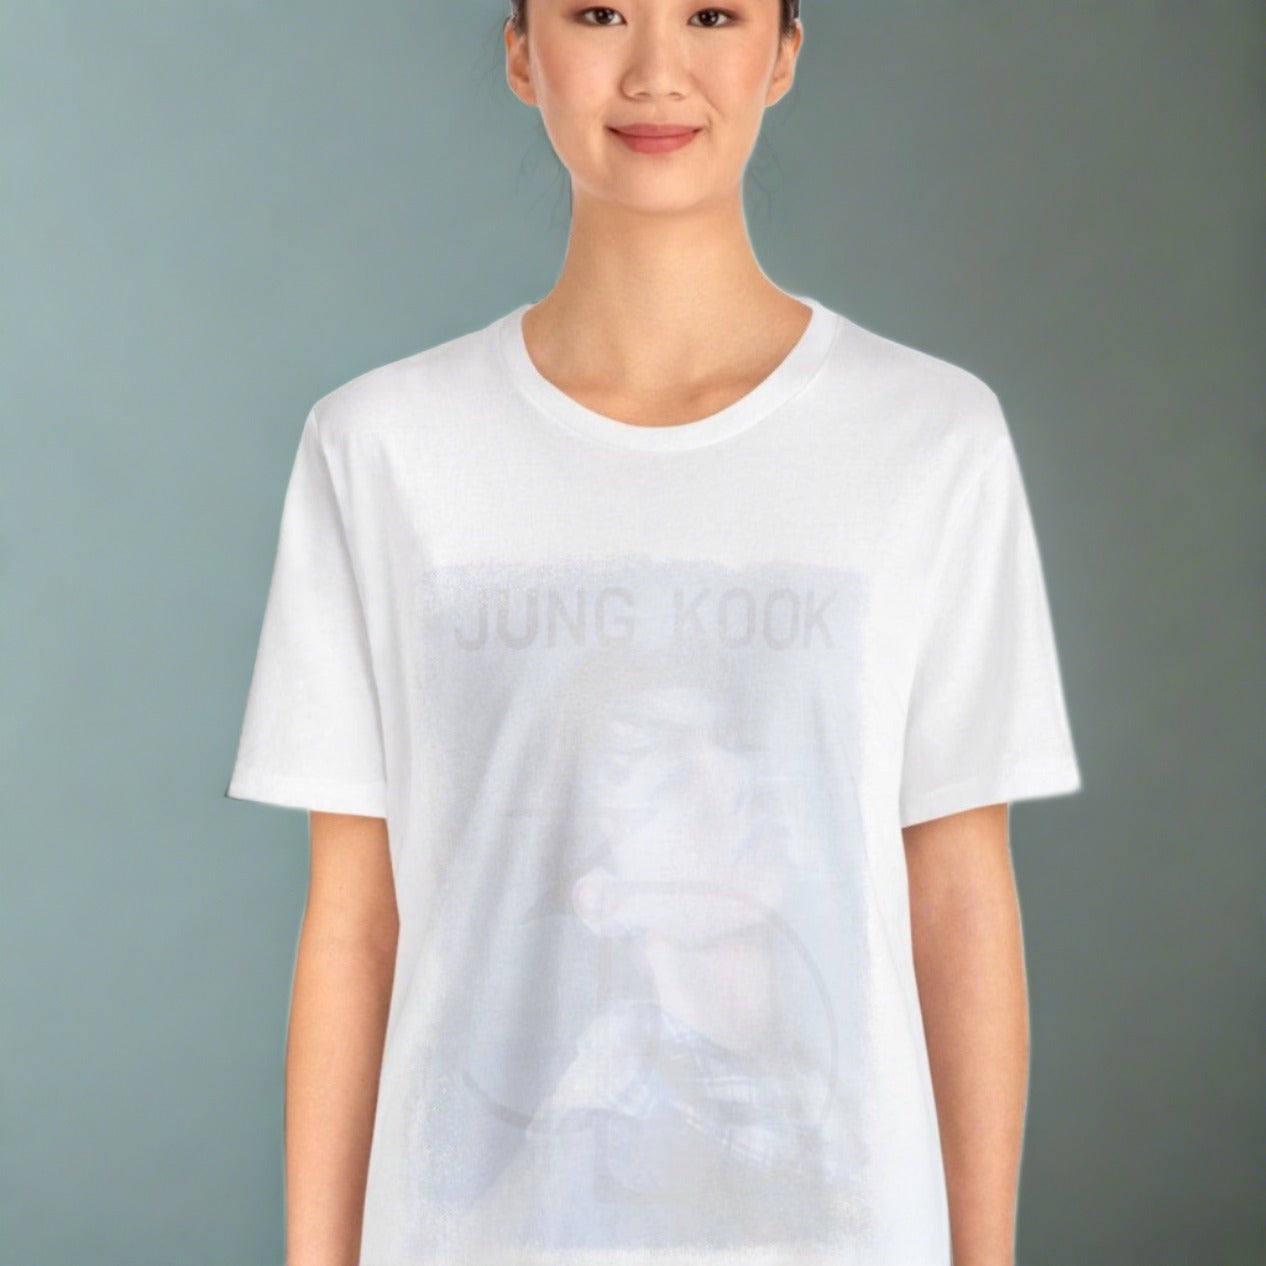 Jung Kook 3D Unisex Jersey Short Sleeve Tee